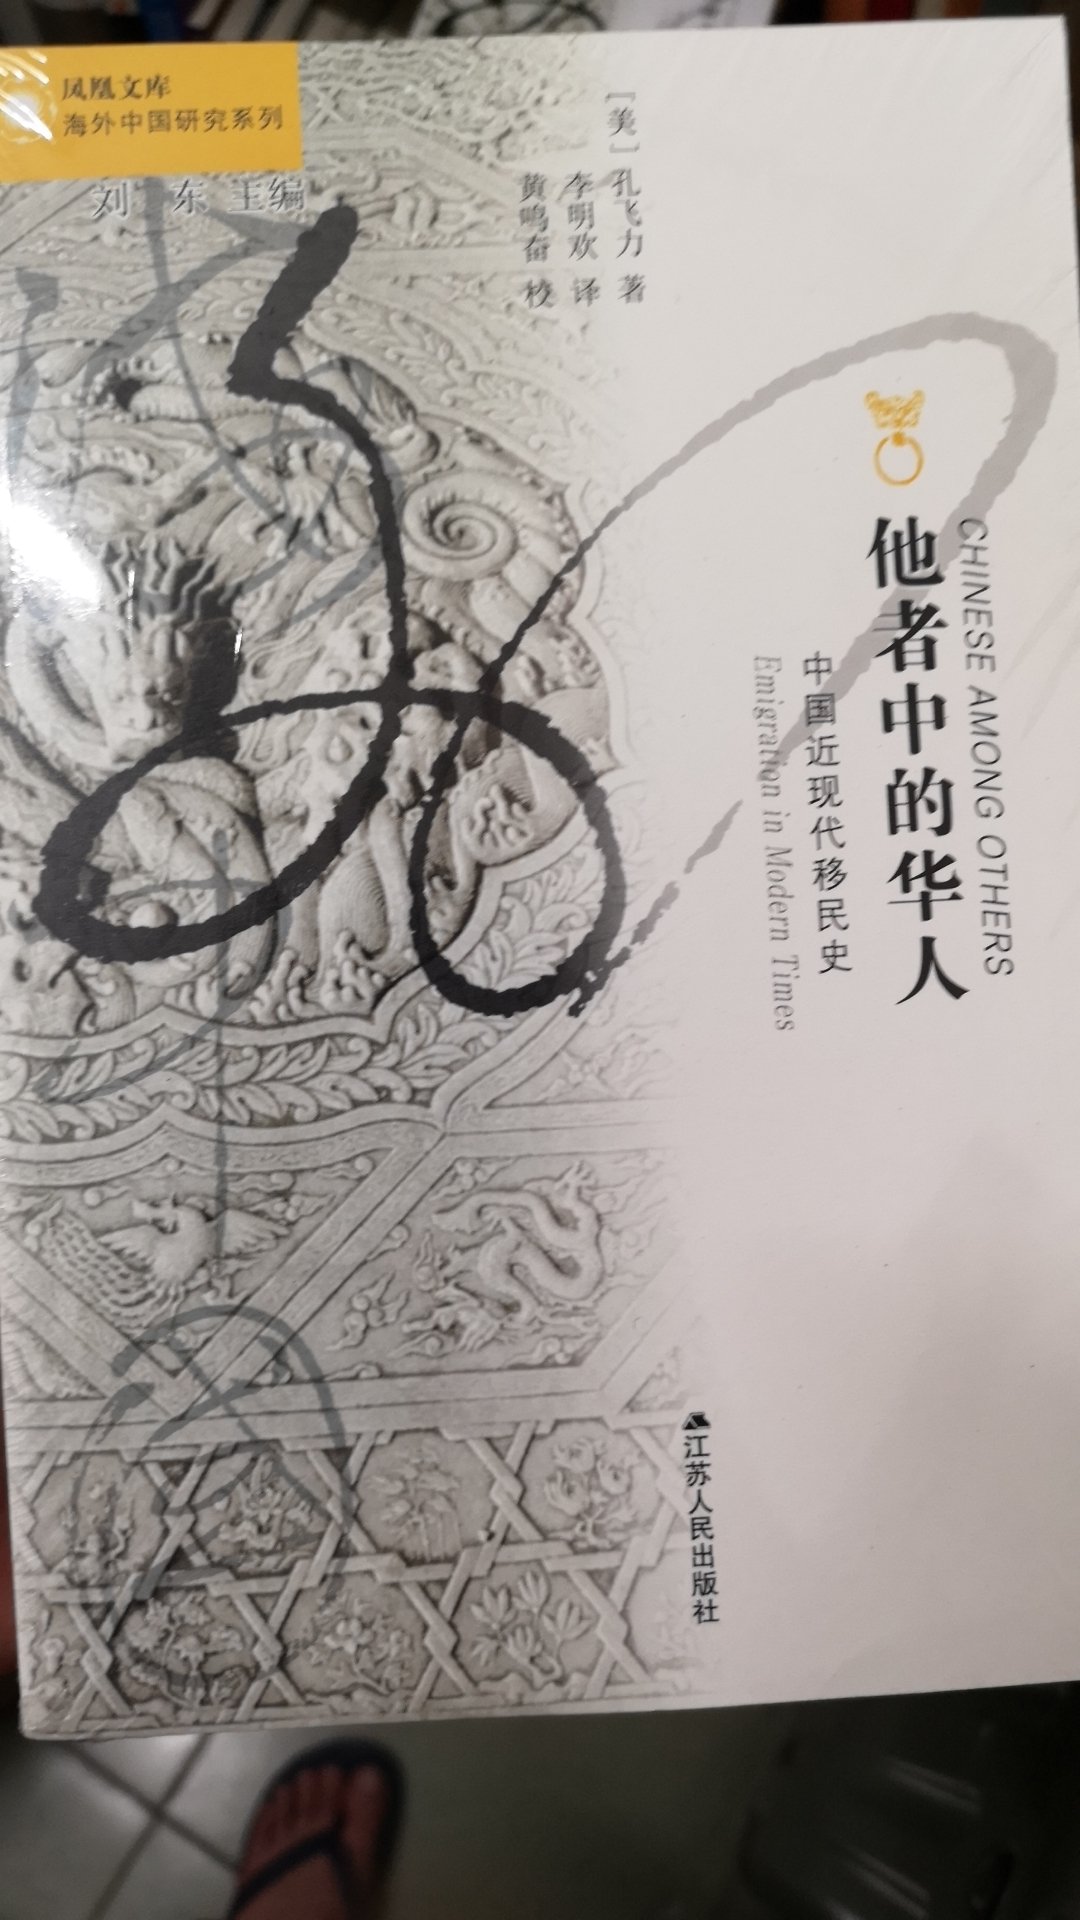 宝贝收到了，海外中国研究系列，特别好的一套书，买了好多本呢，他者中的华人，中国近现代移民史一定要好好拜读。嘻嘻。推荐给大家哦！哈哈哈哈哈哈?